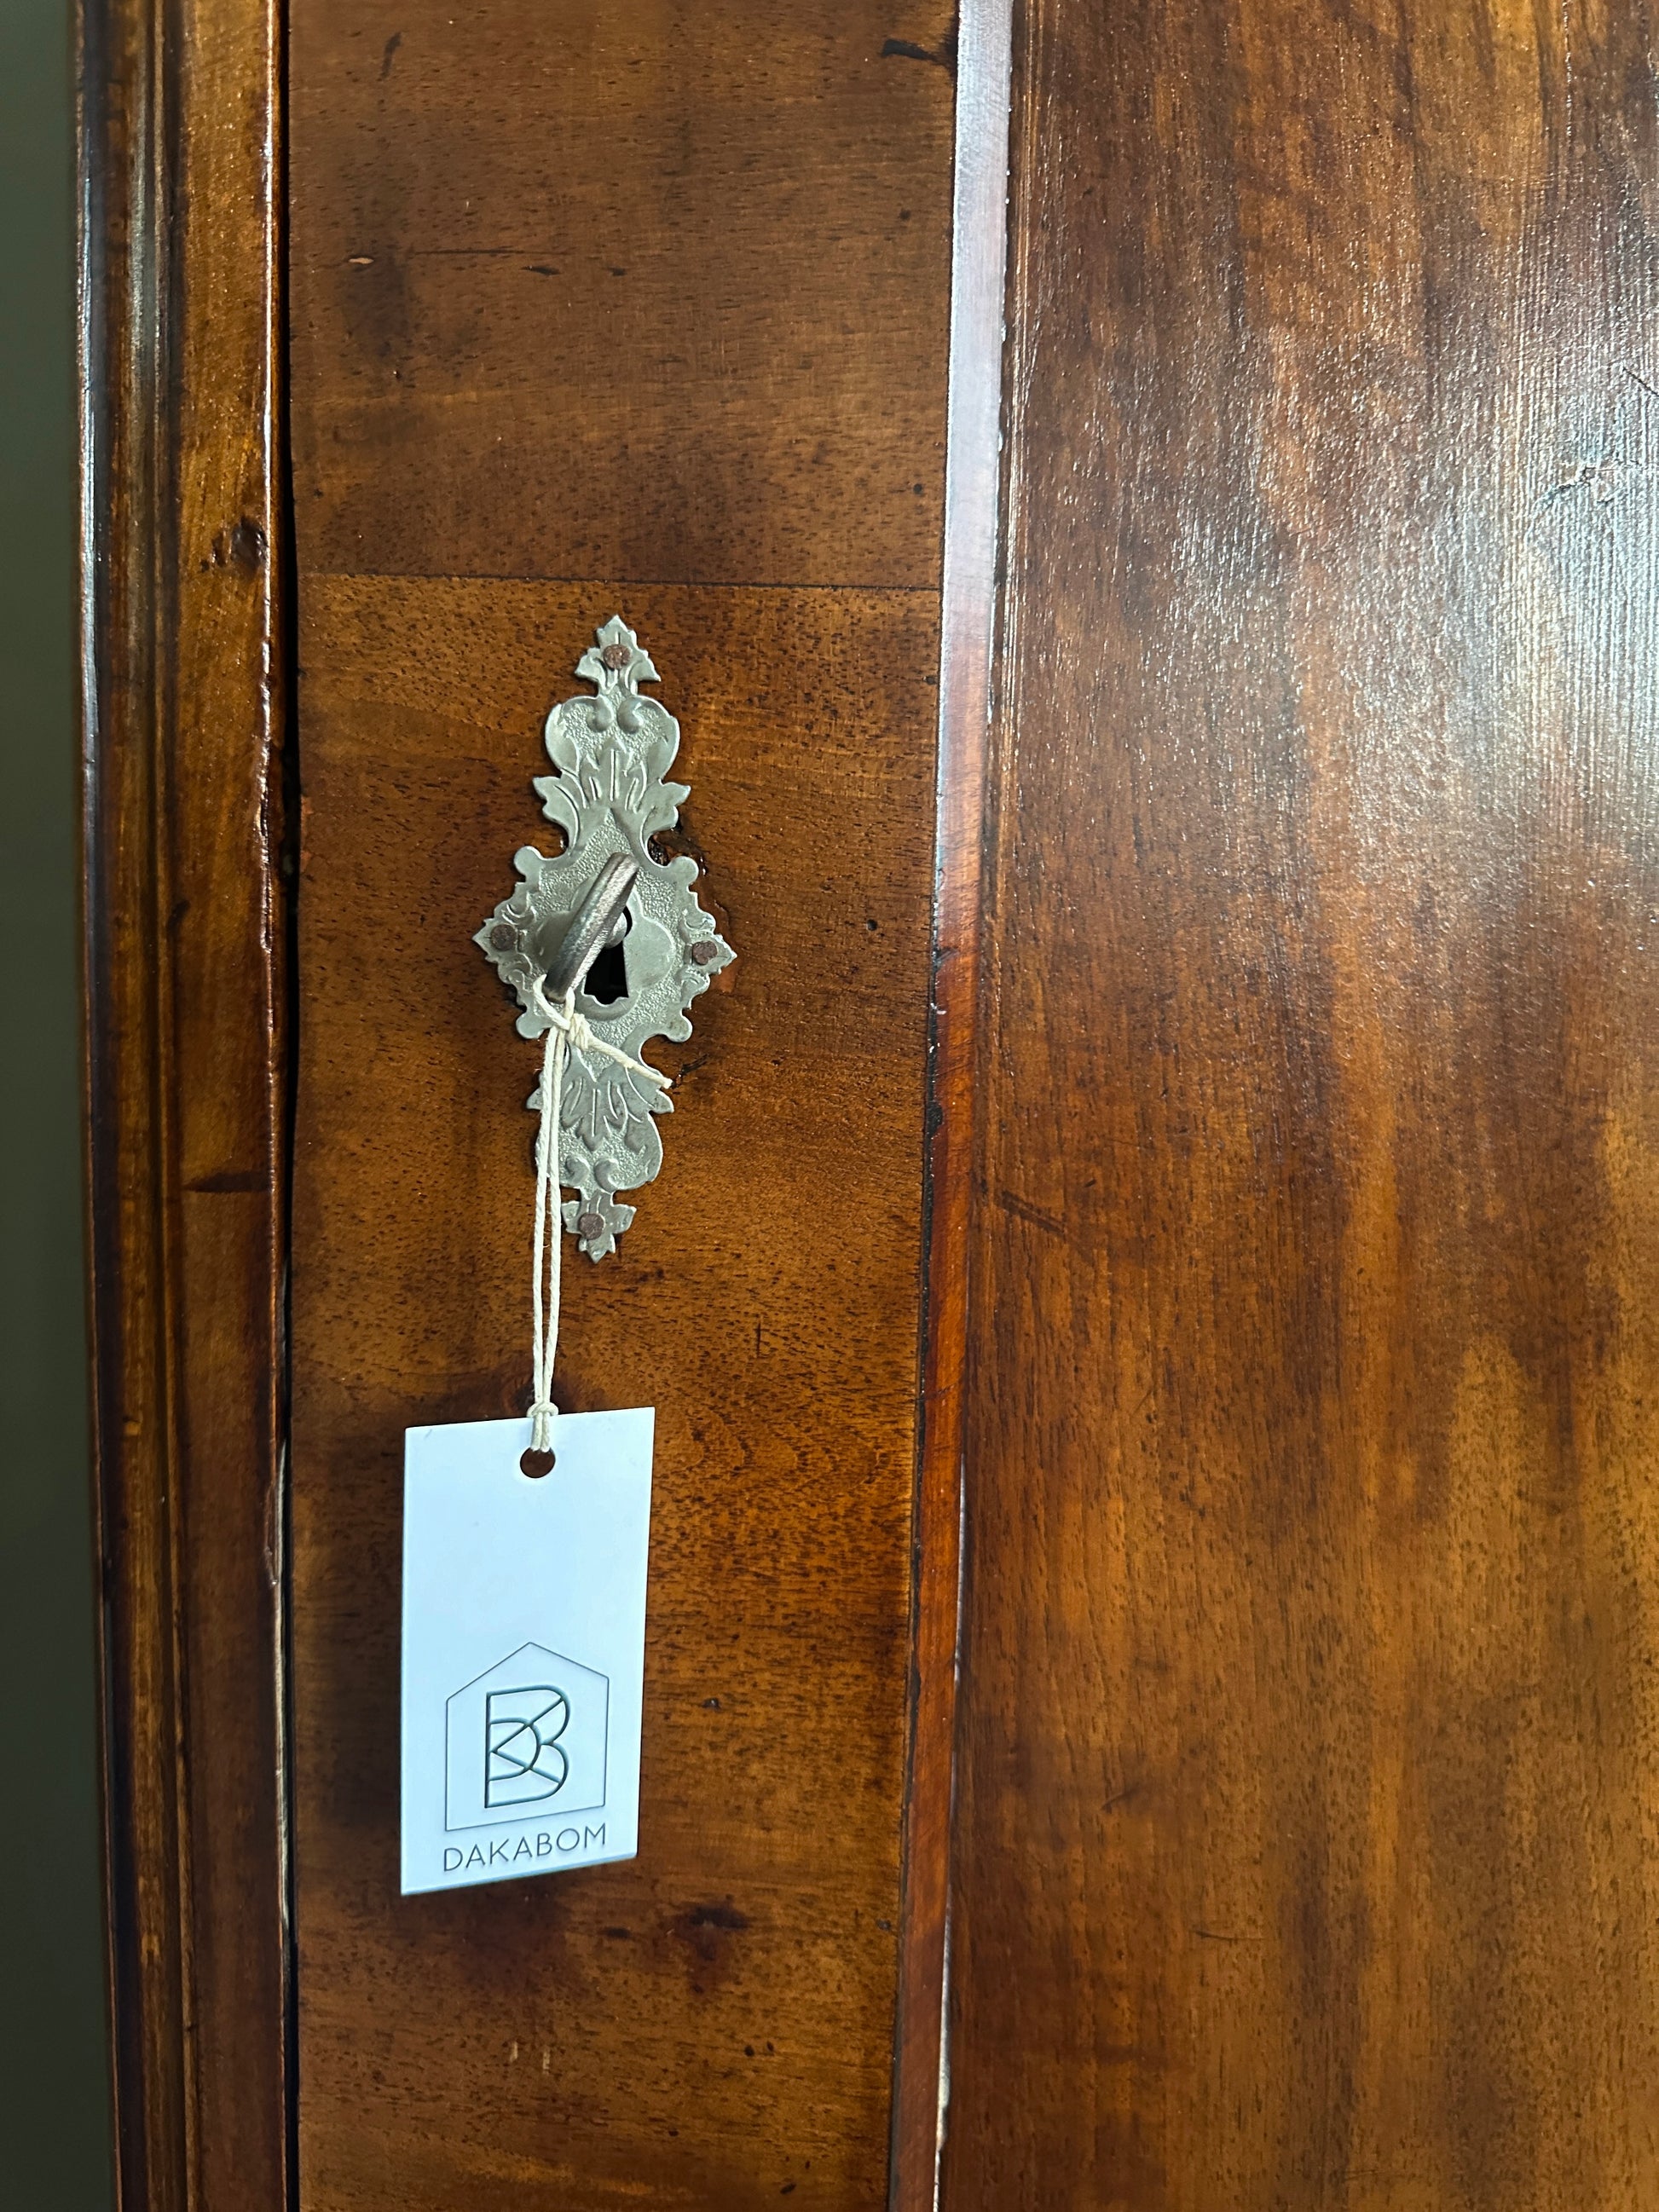 Bild visar gammalt låsbeslag med nyckel